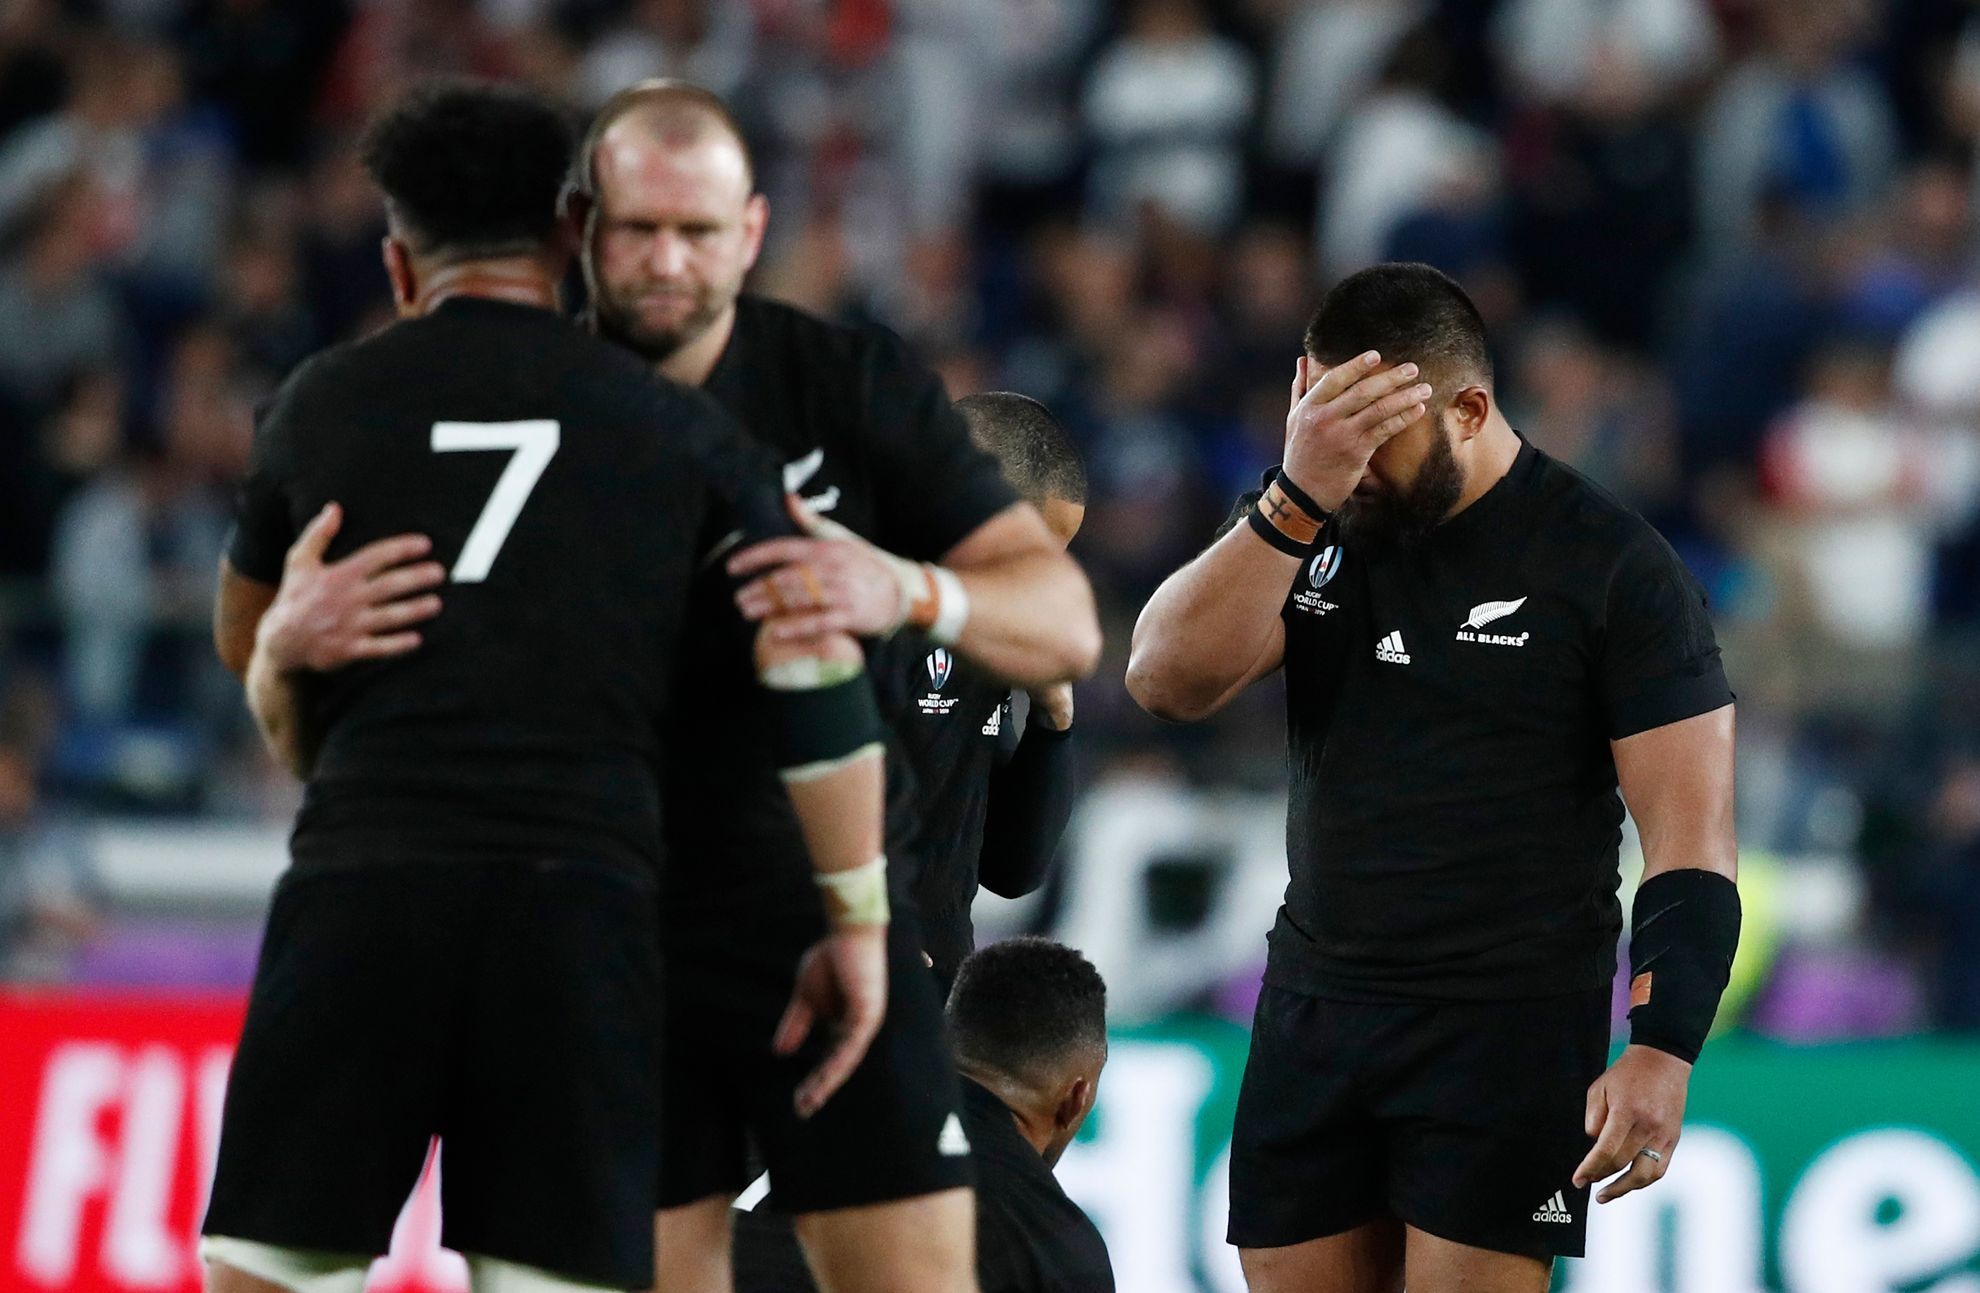 Semifinále MS v ragby 2019, Anglie - Nový Zéland: Zklamaní All Blacks po zápase